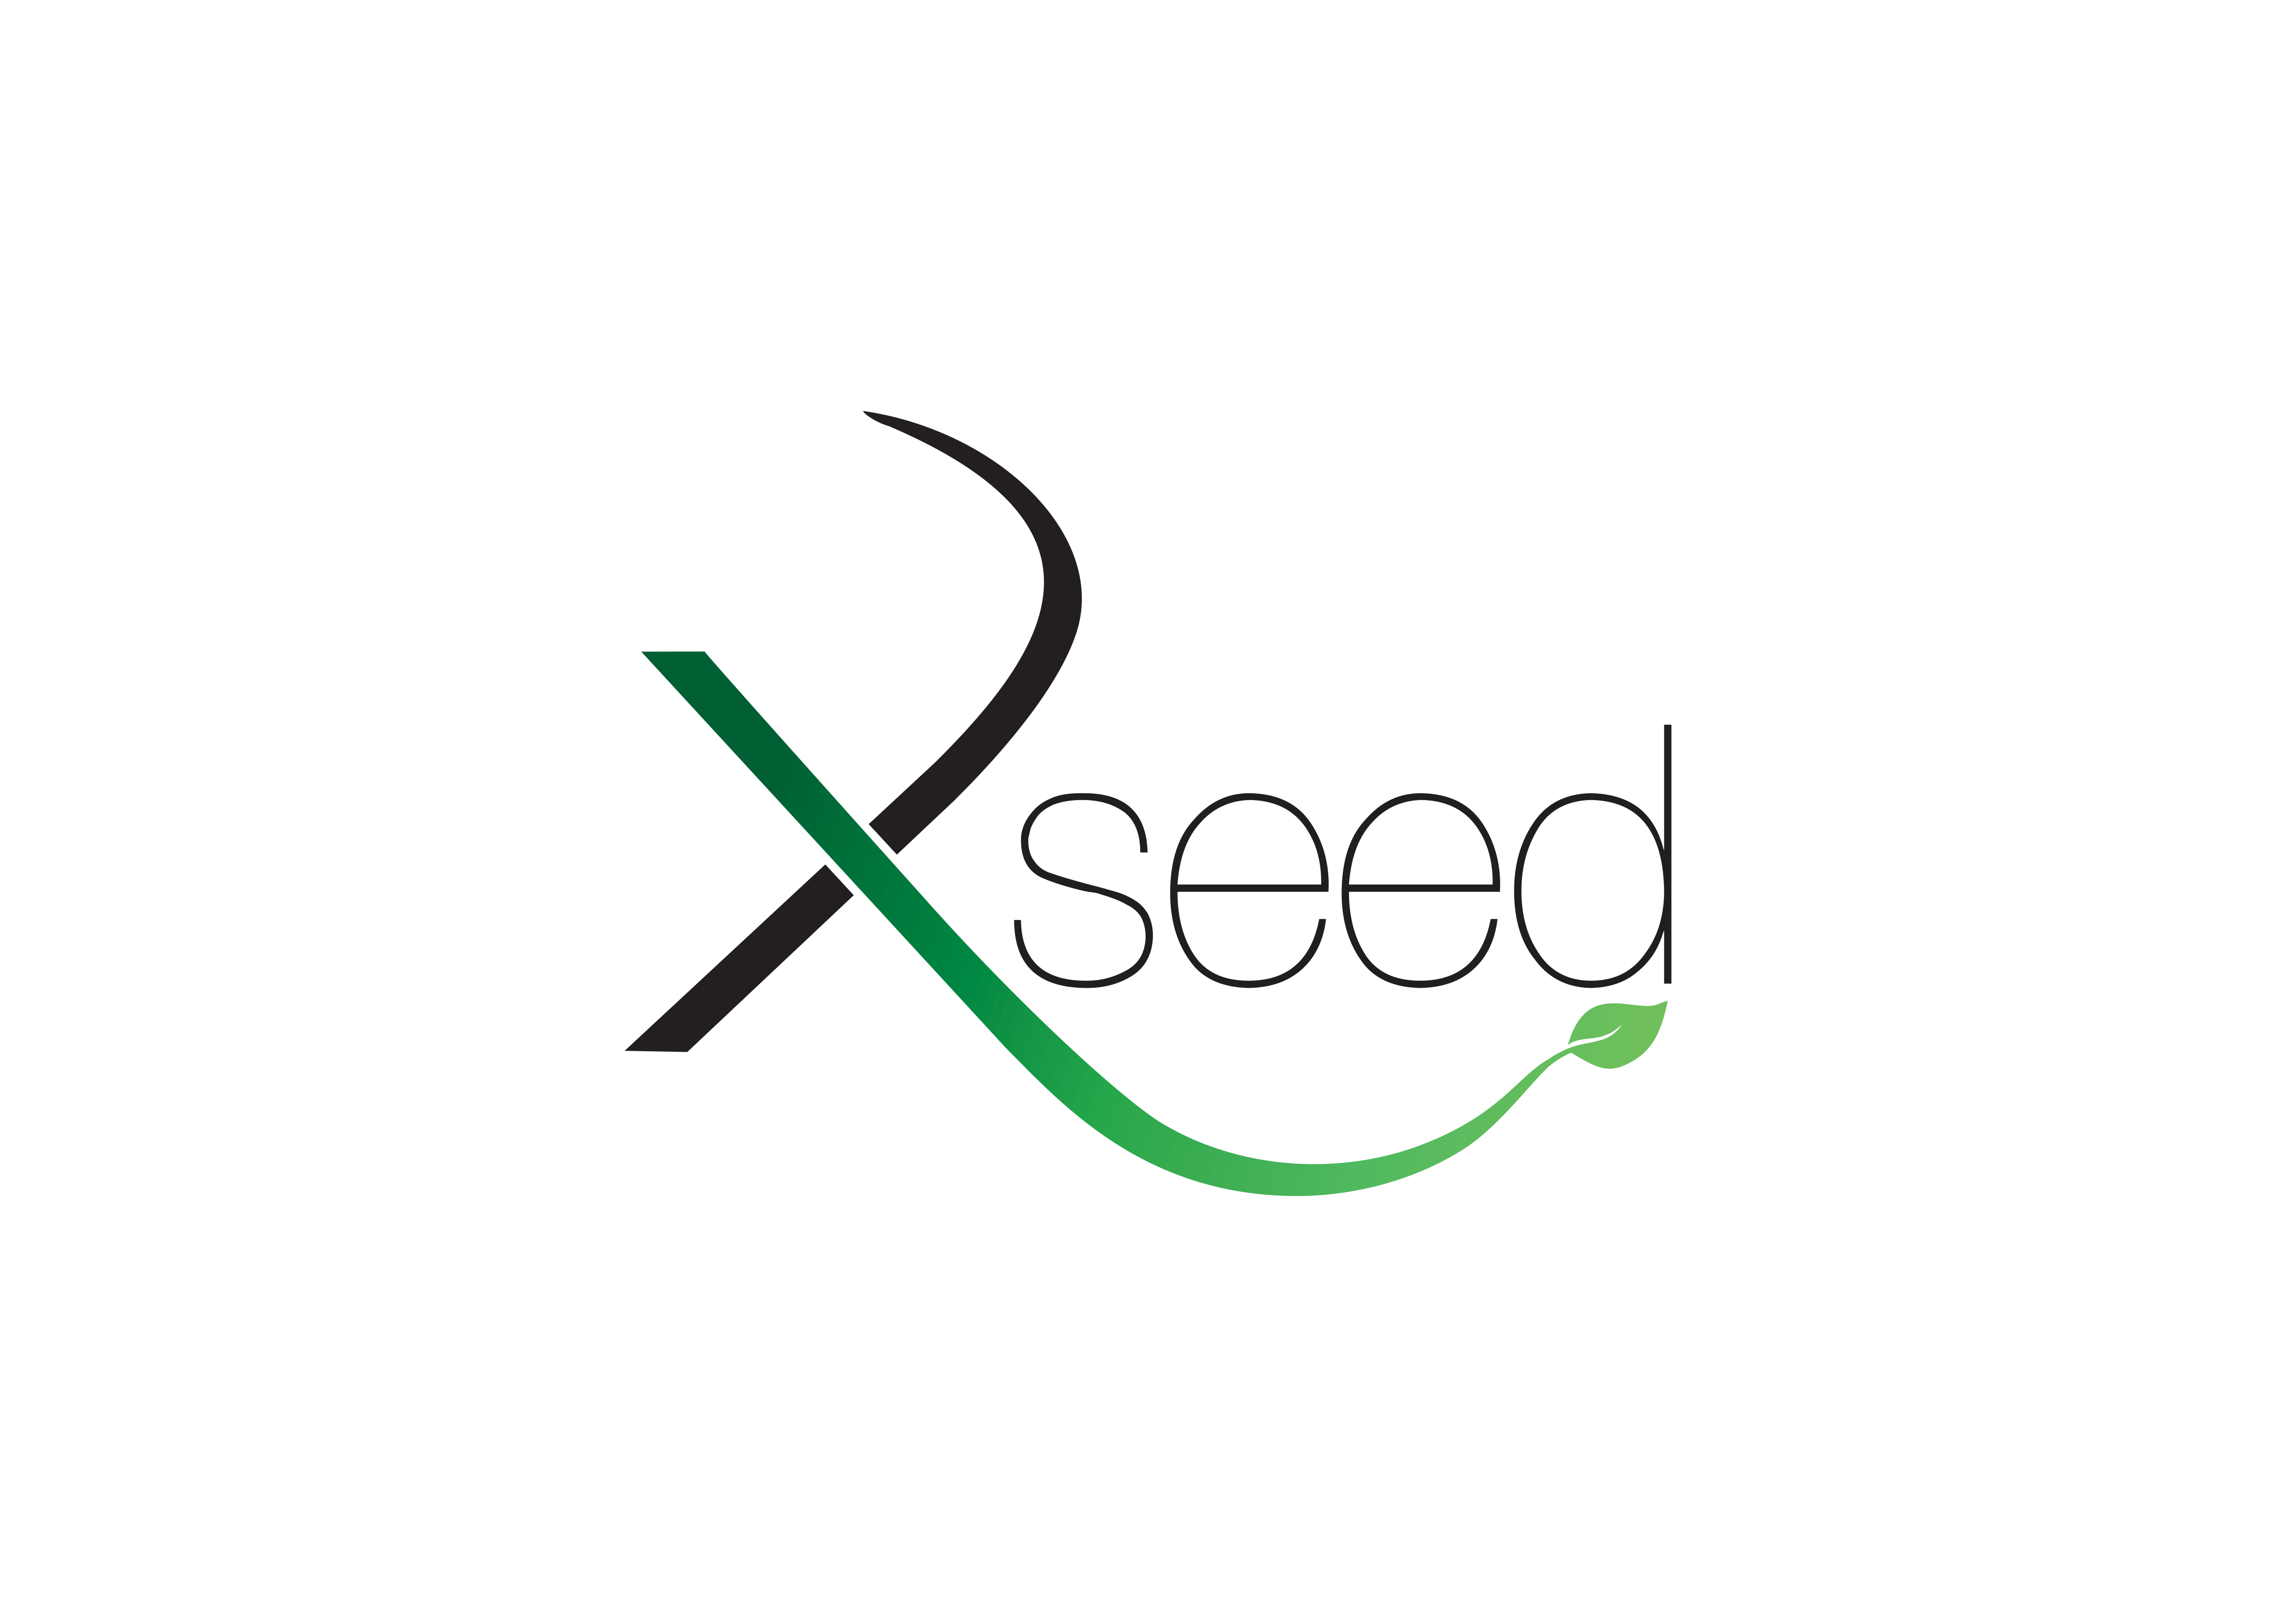 Xseed logo